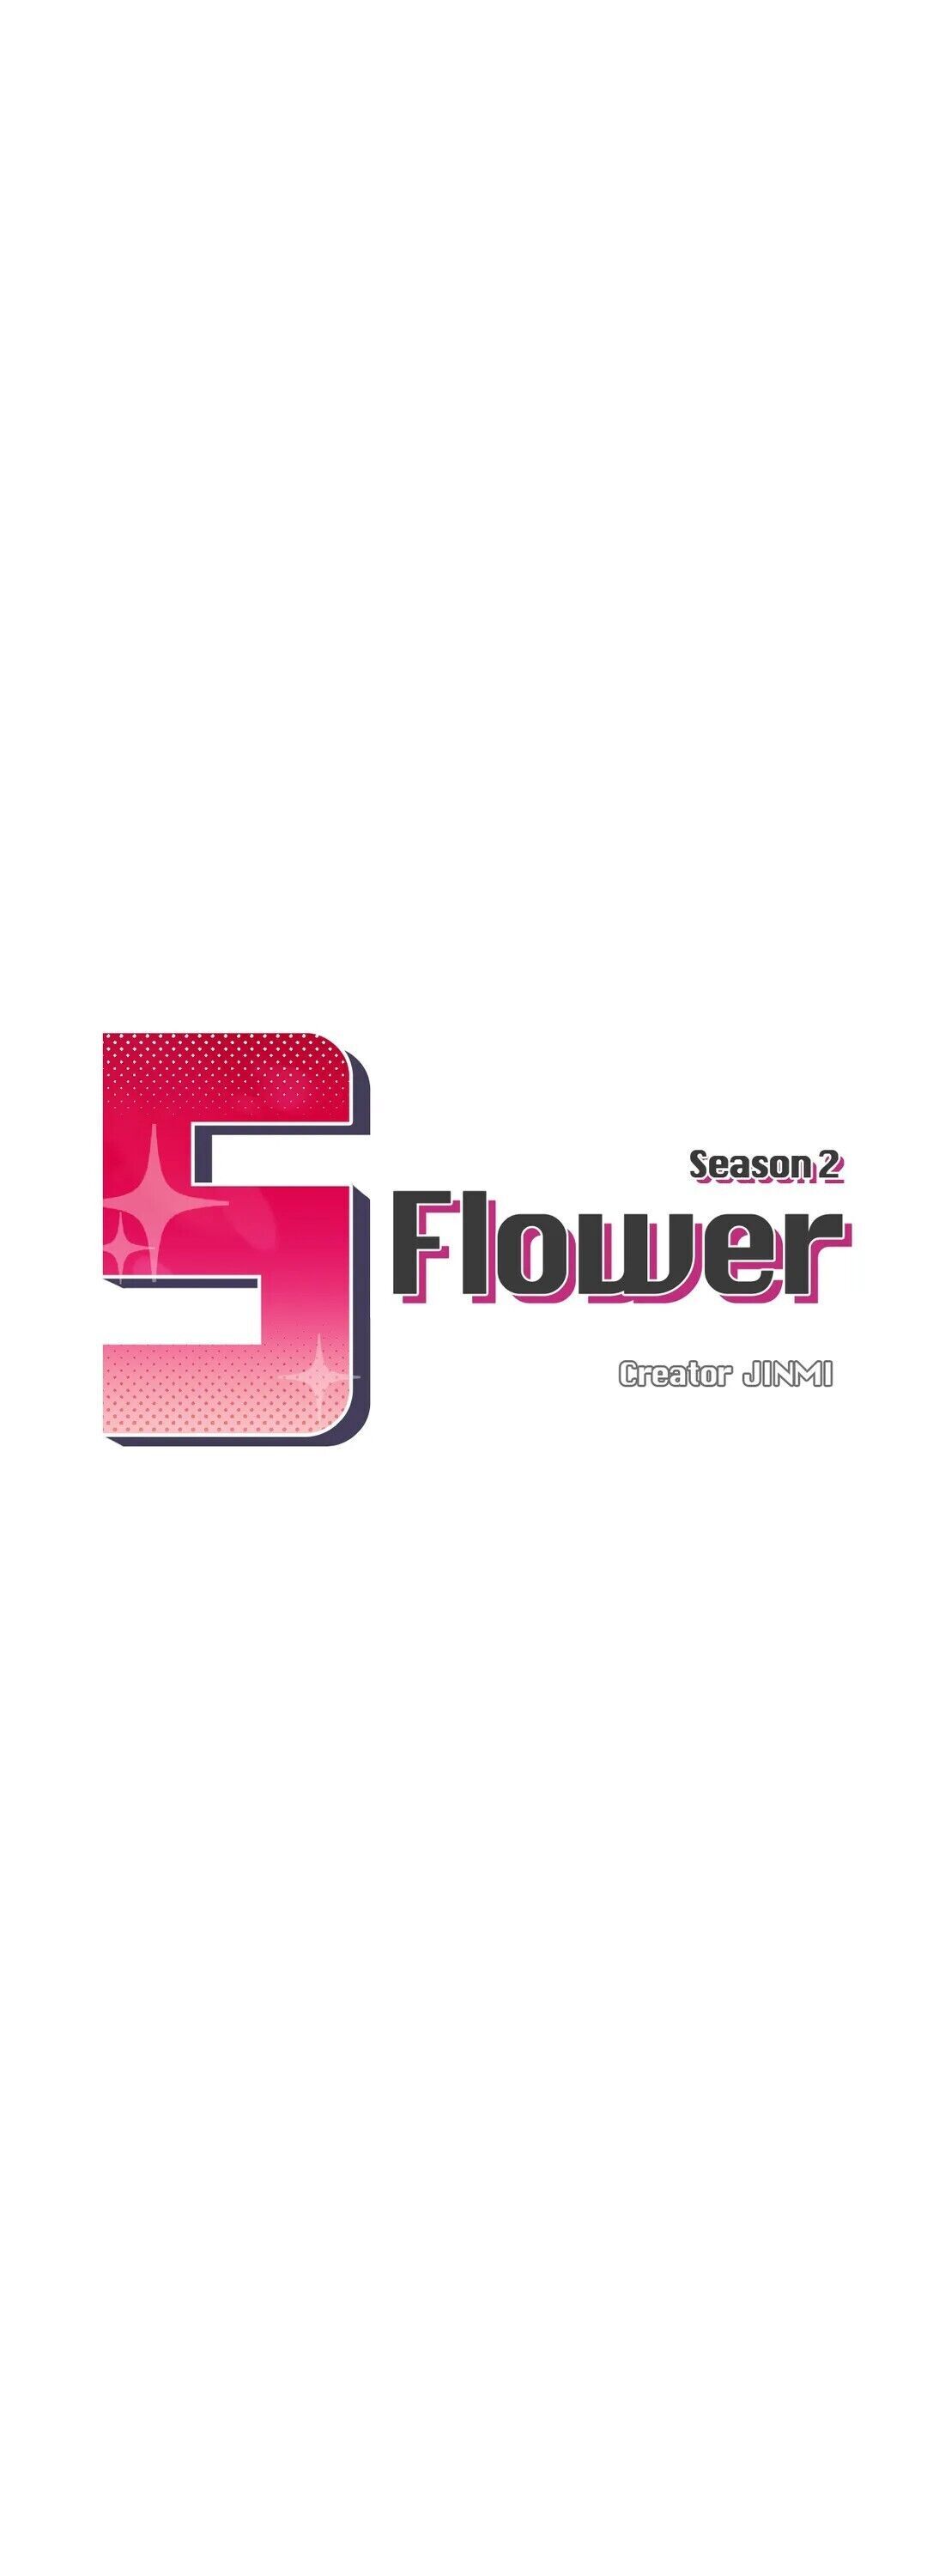 The image S Flower - Chapter 56 - af4boCoPrHthUkd - ManhwaManga.io